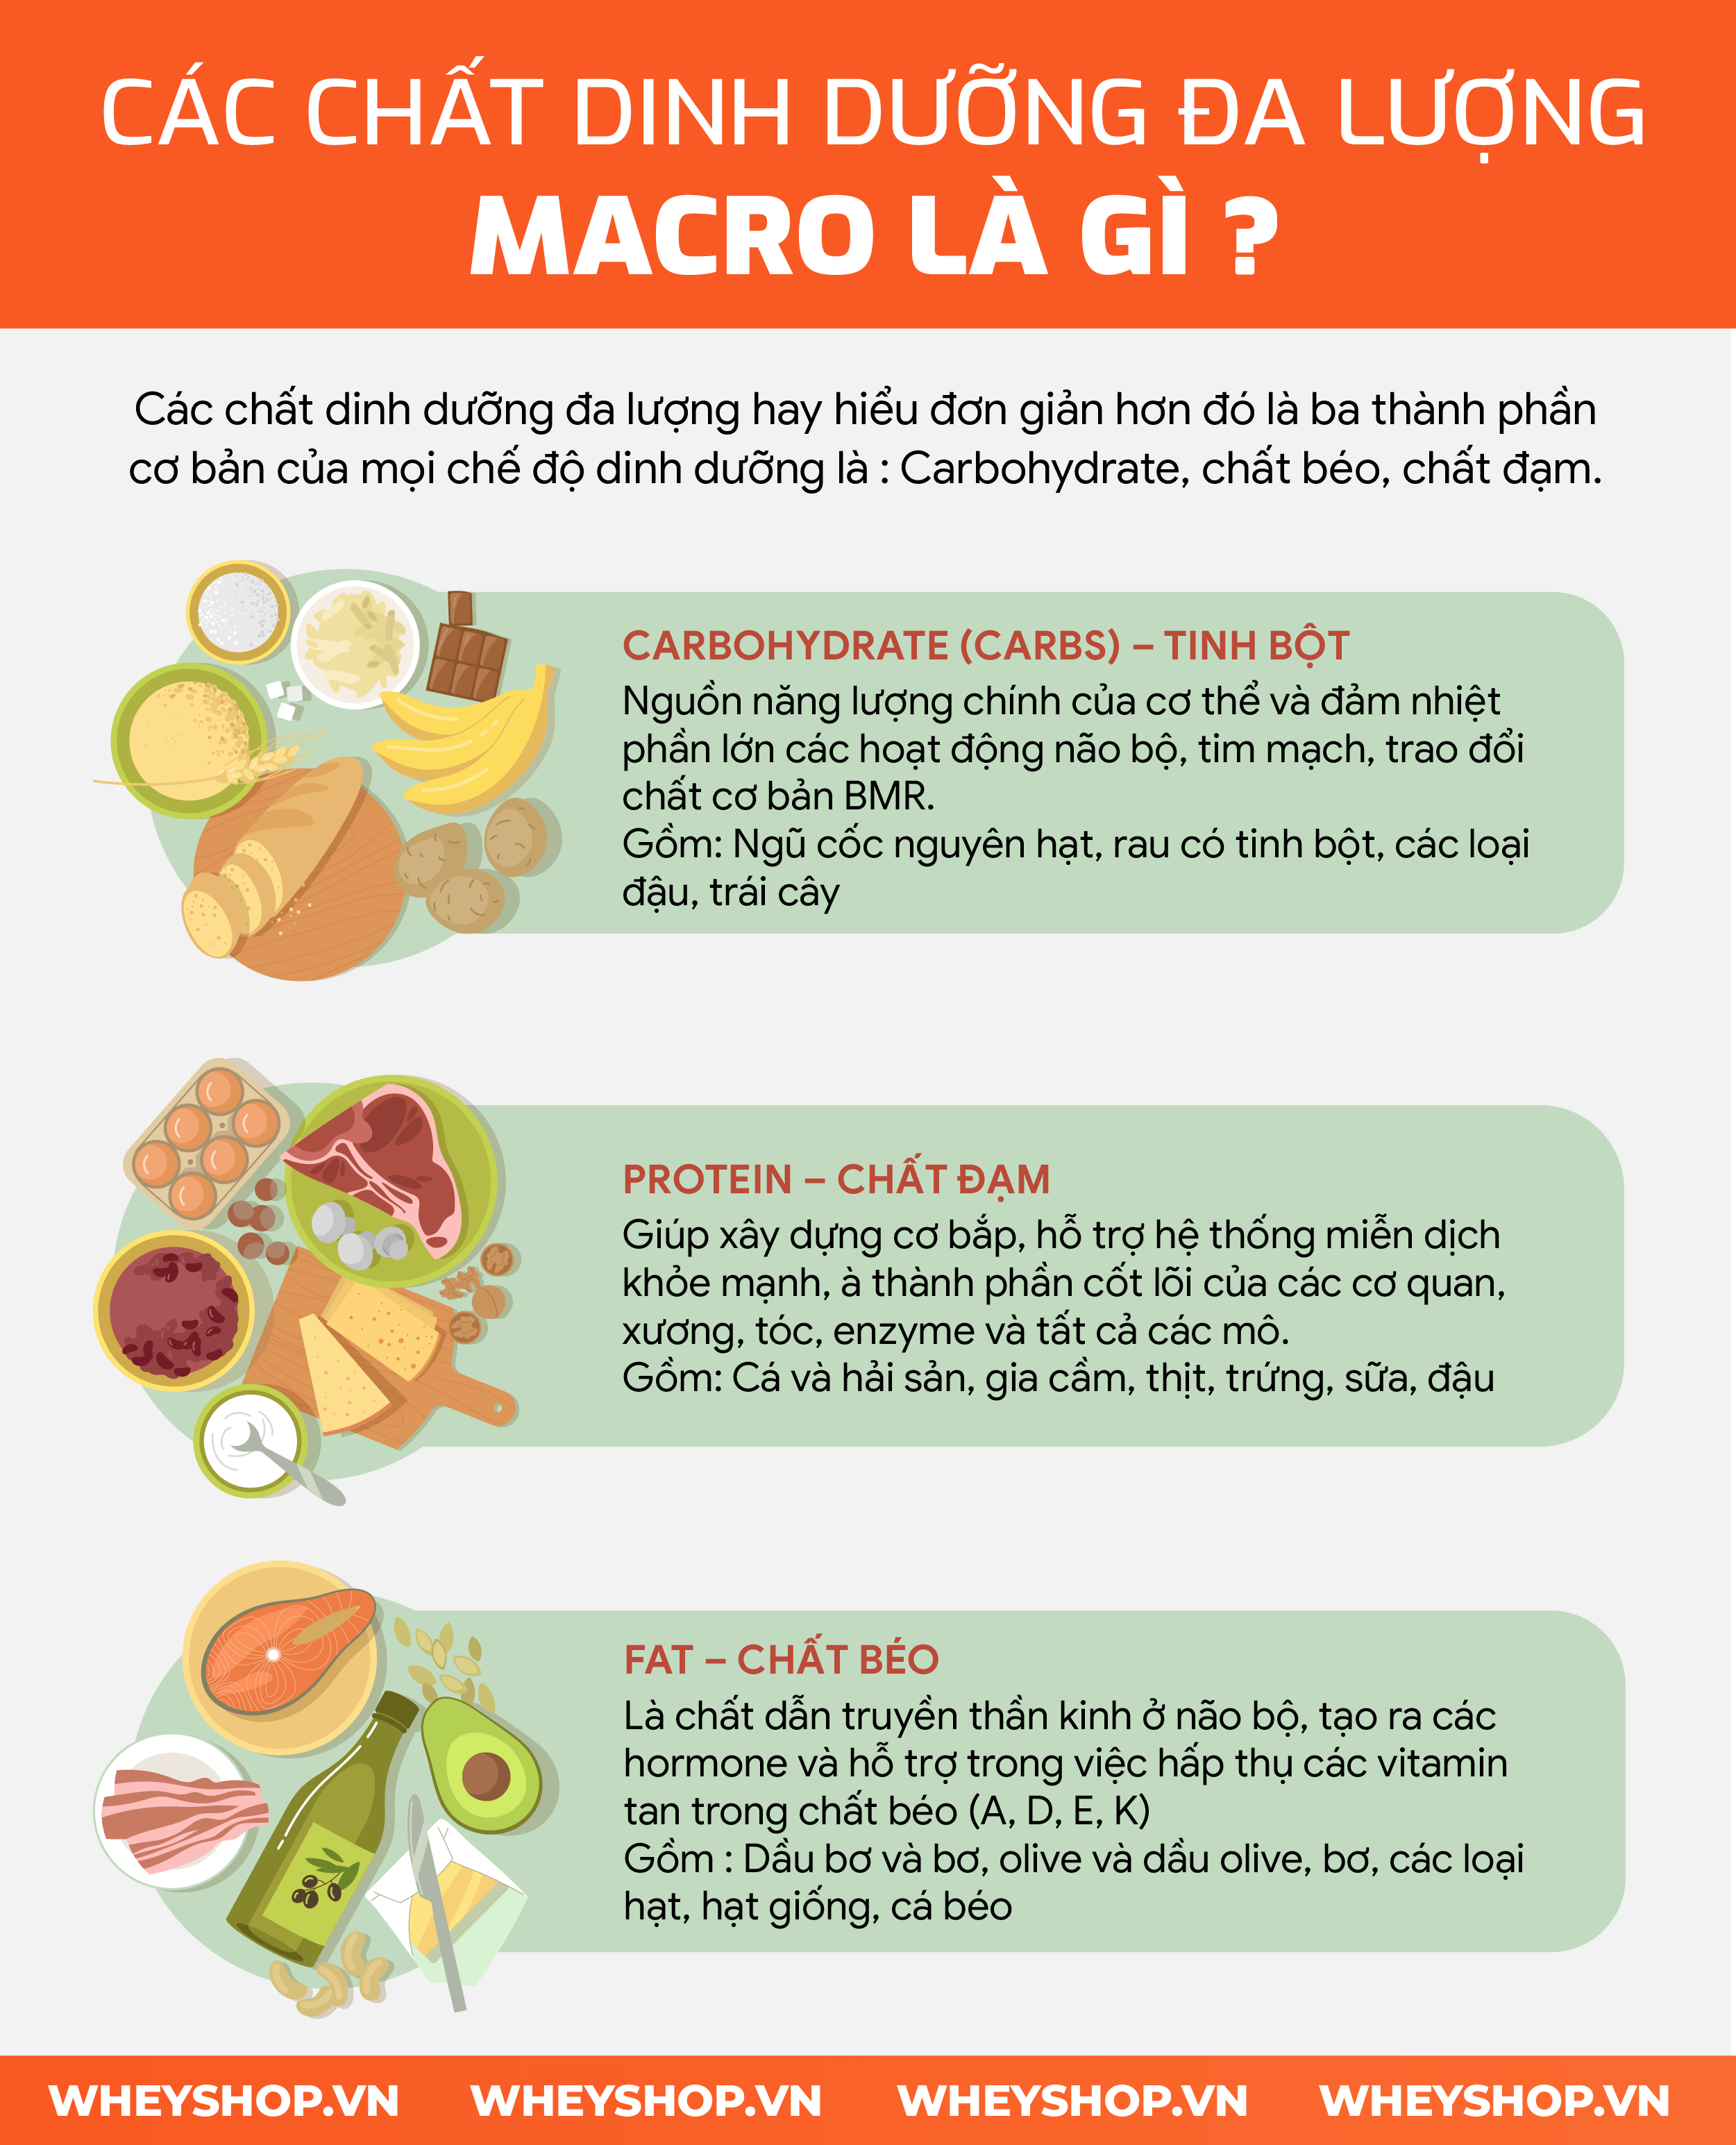 Hướng dẫn cách tính Macro từng bước vô cùng đơn giản. Macro giúp kiểm soát calories nạp vào, hỗ trợ giảm cân hiệu quả, tăng cân tăng cơ dễ dàng cho bất cứ ai...